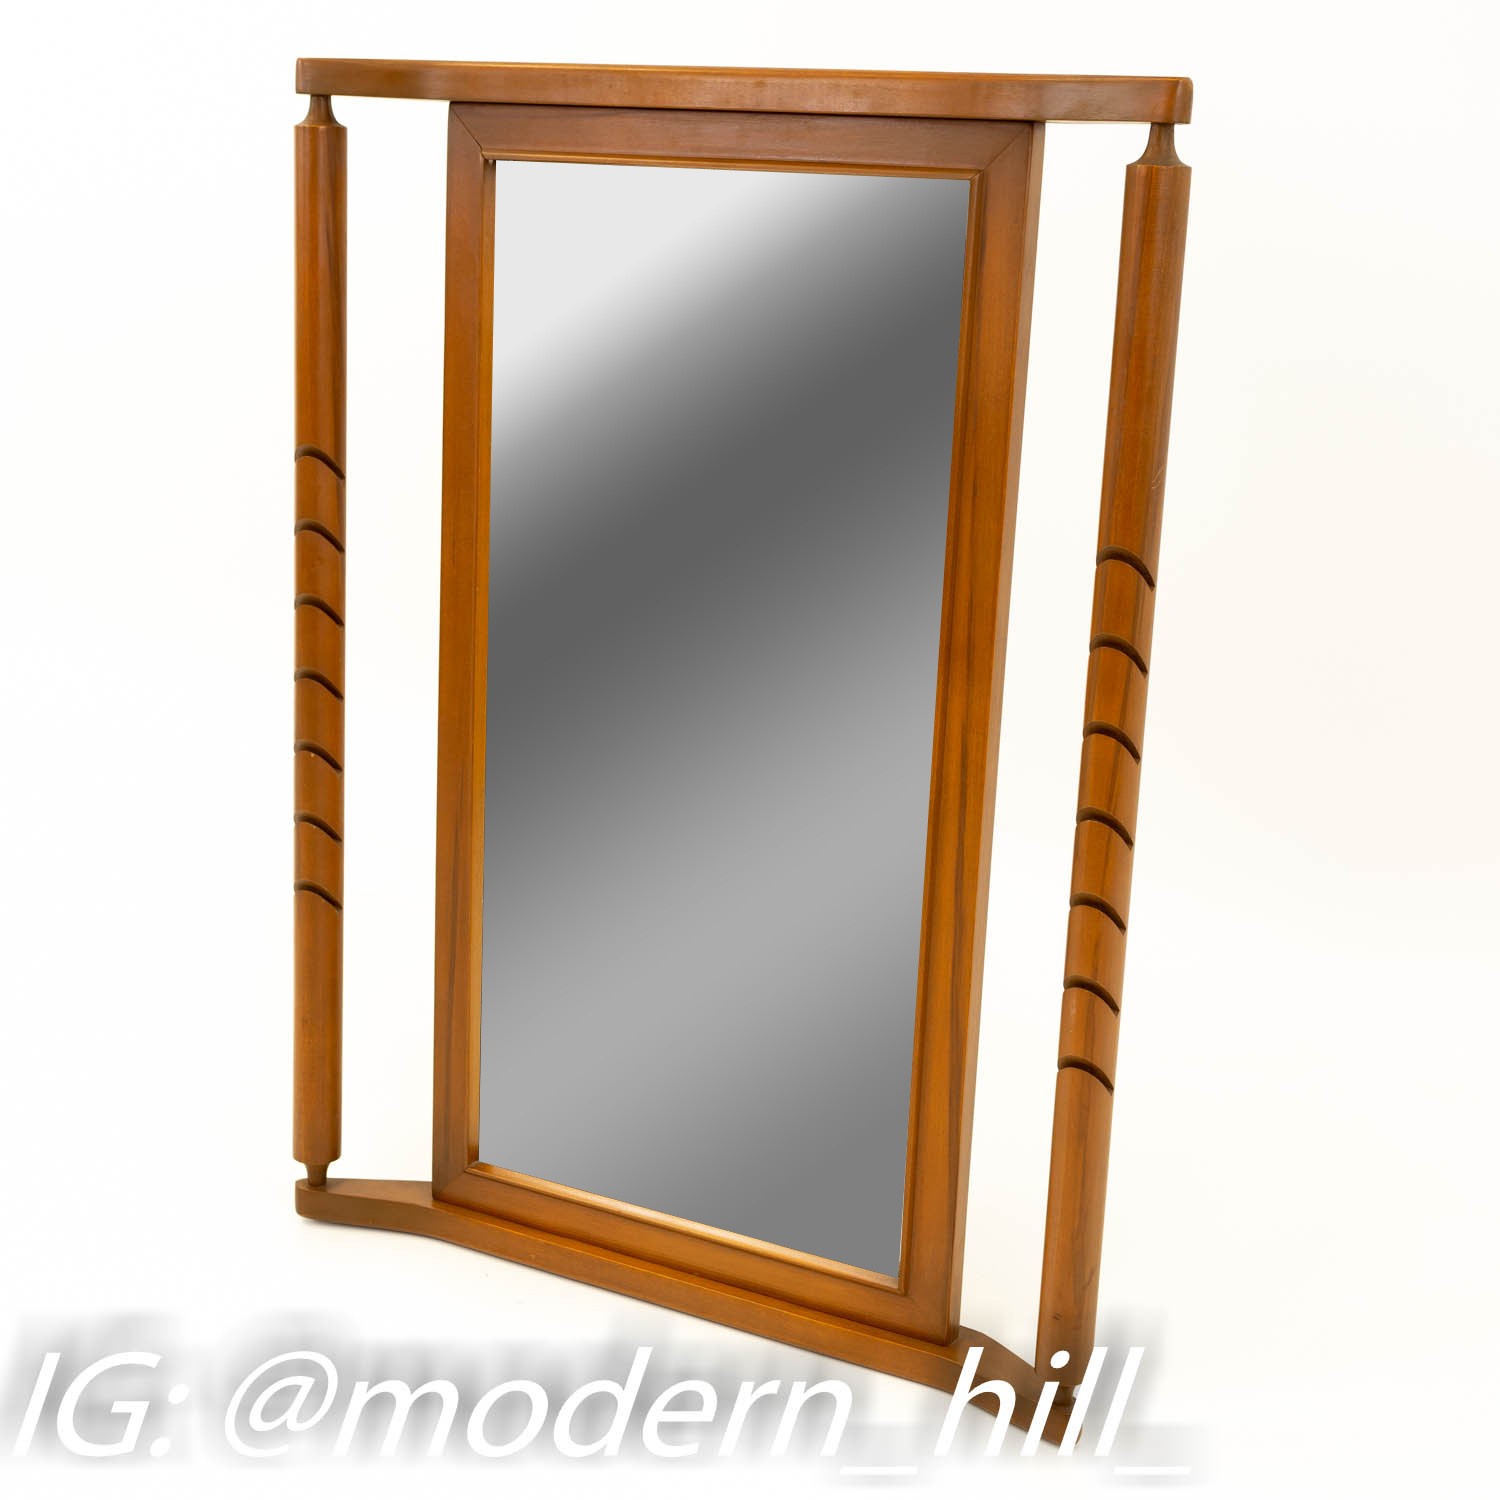 Basic Witz Mid Century Modern Walnut Mirror